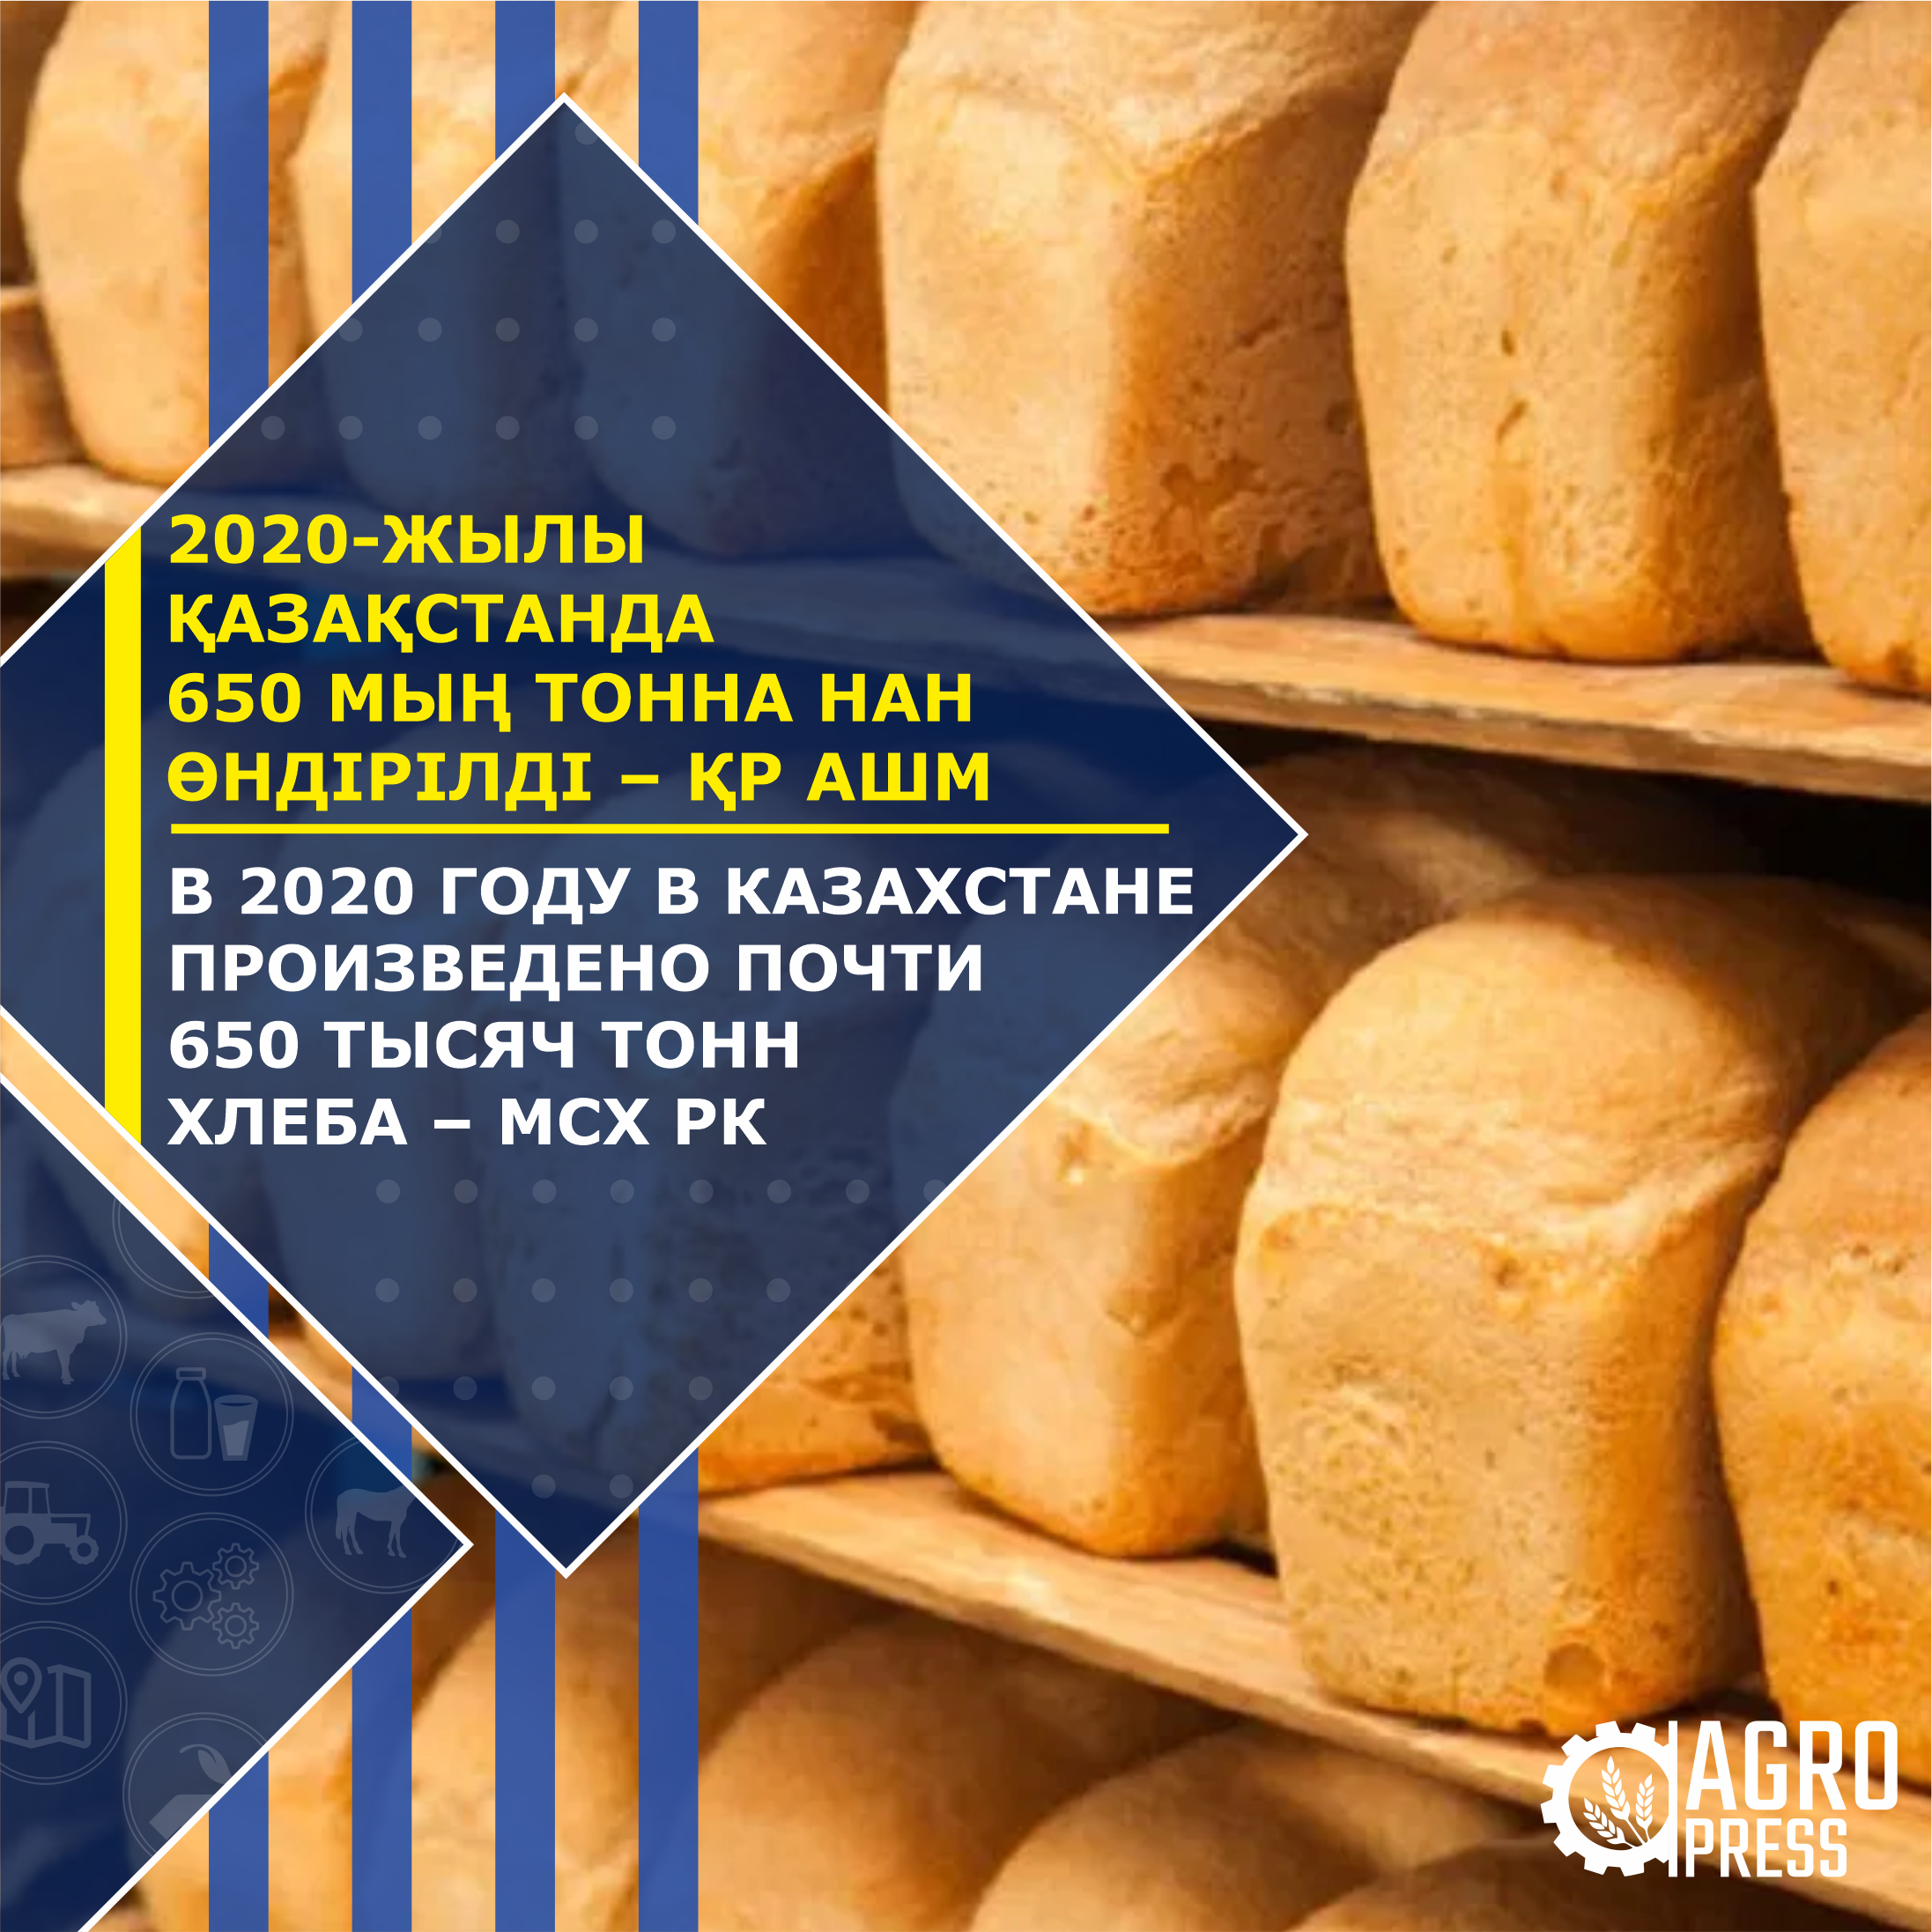 В 2020 году в Казахстане произведено почти 650 тысяч тонн хлеба – МСХ РК